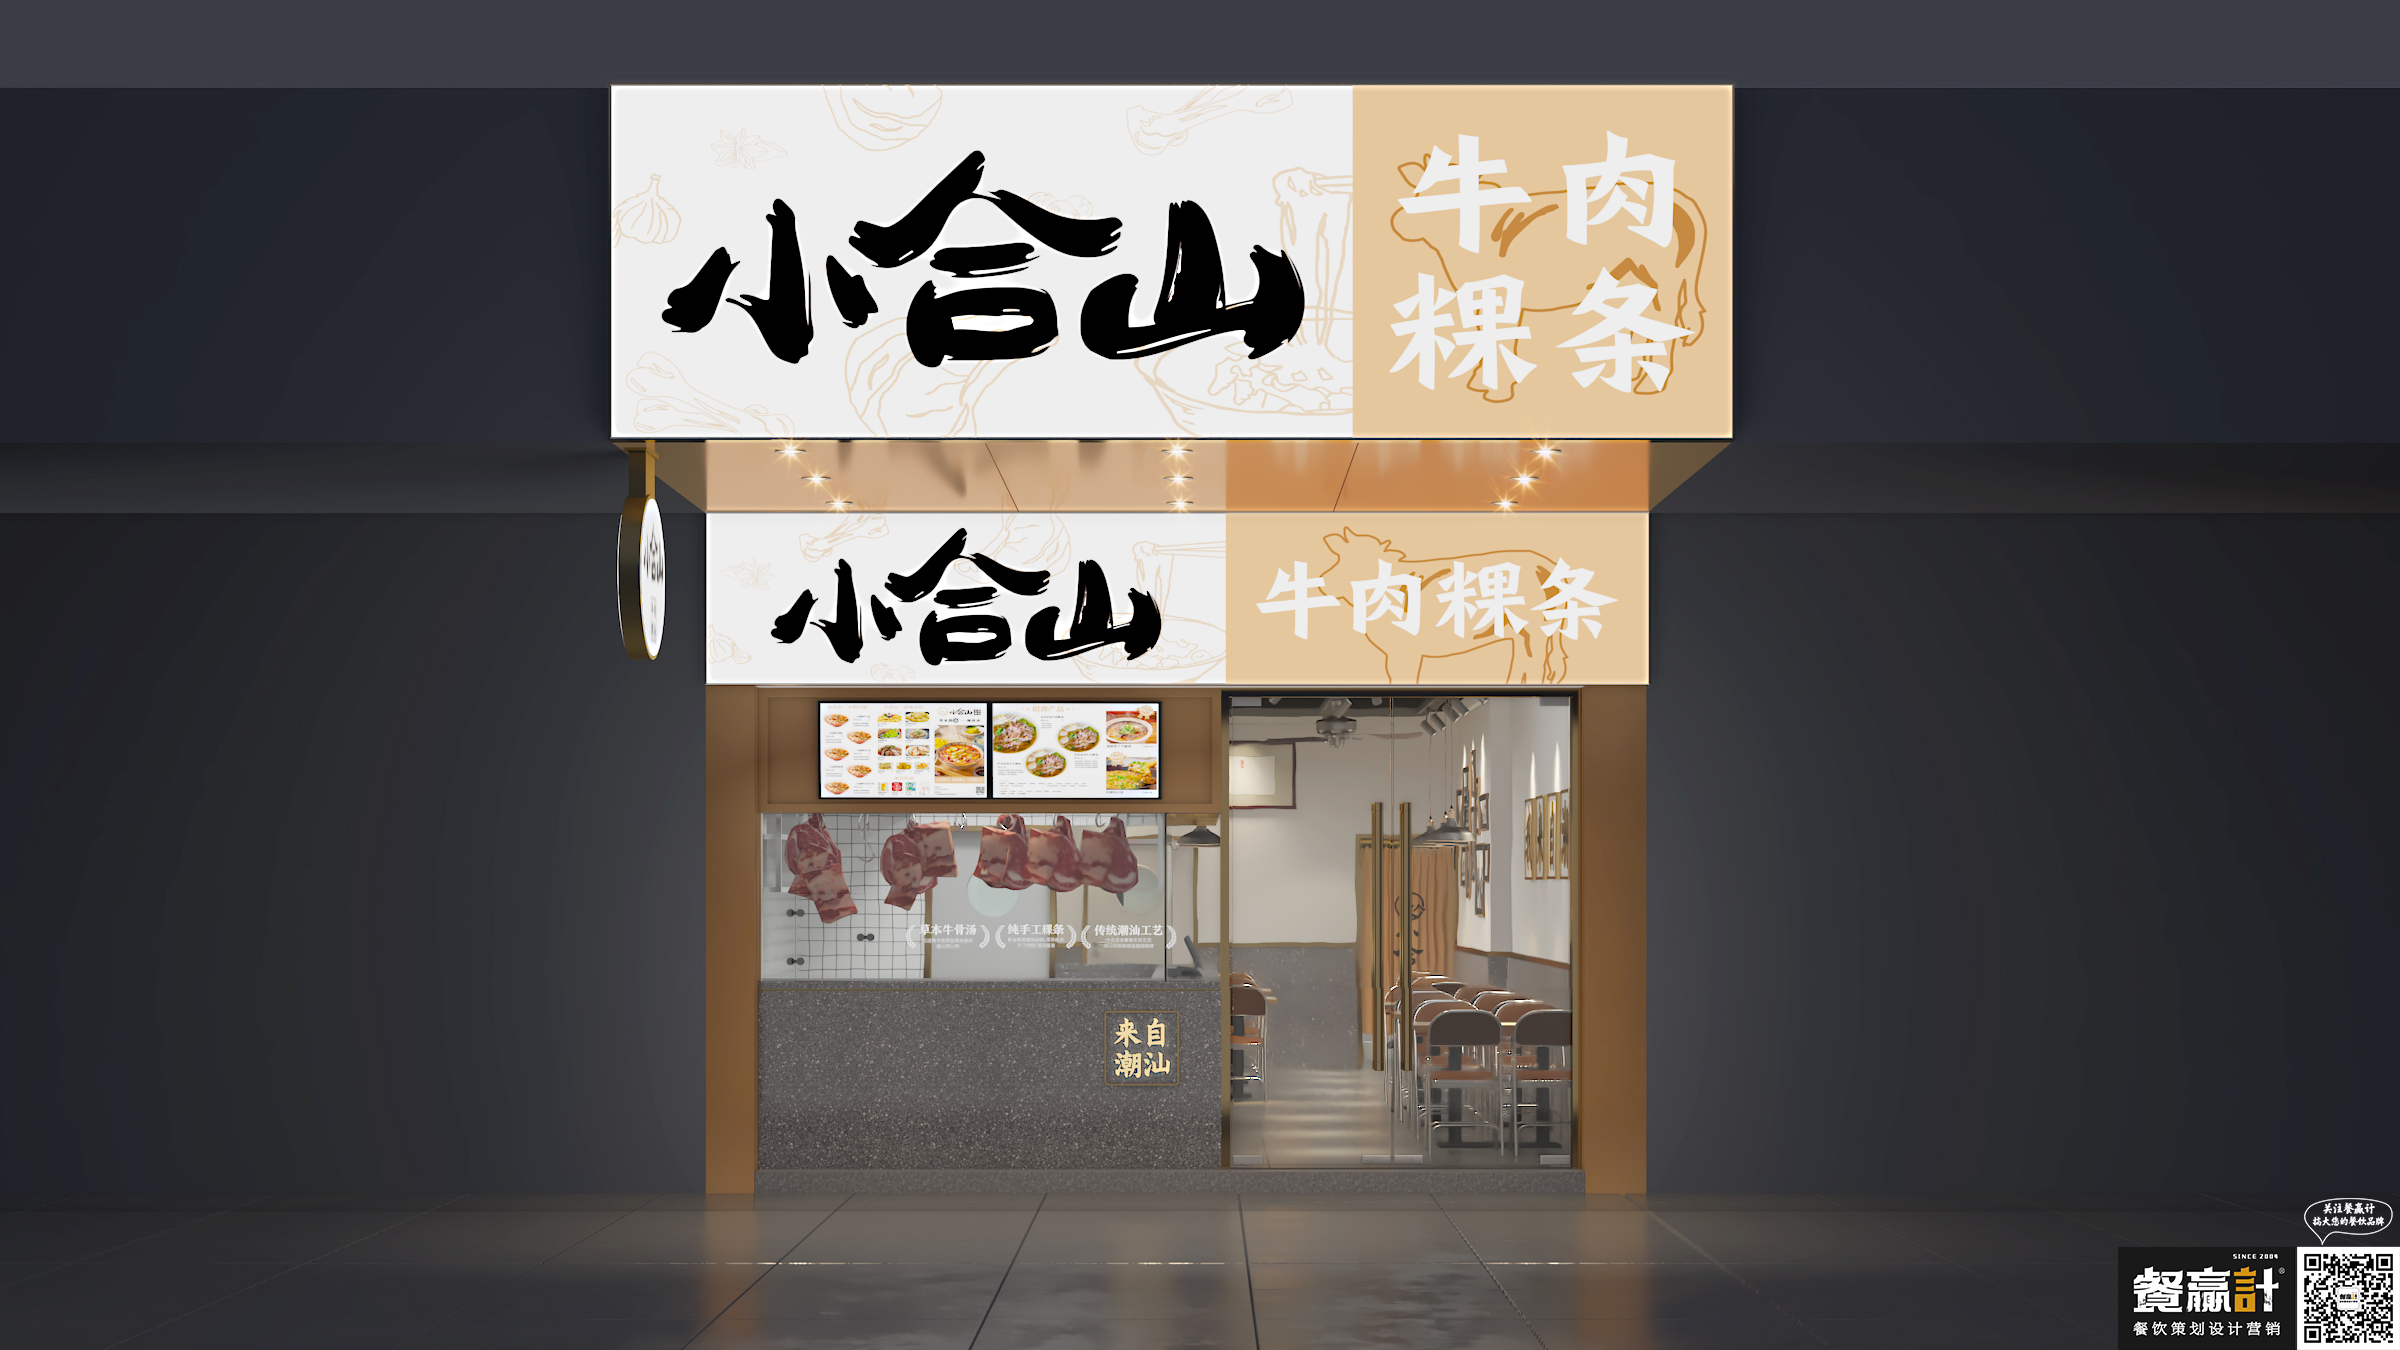 火锅小合山——牛肉粿条餐厅空间设计